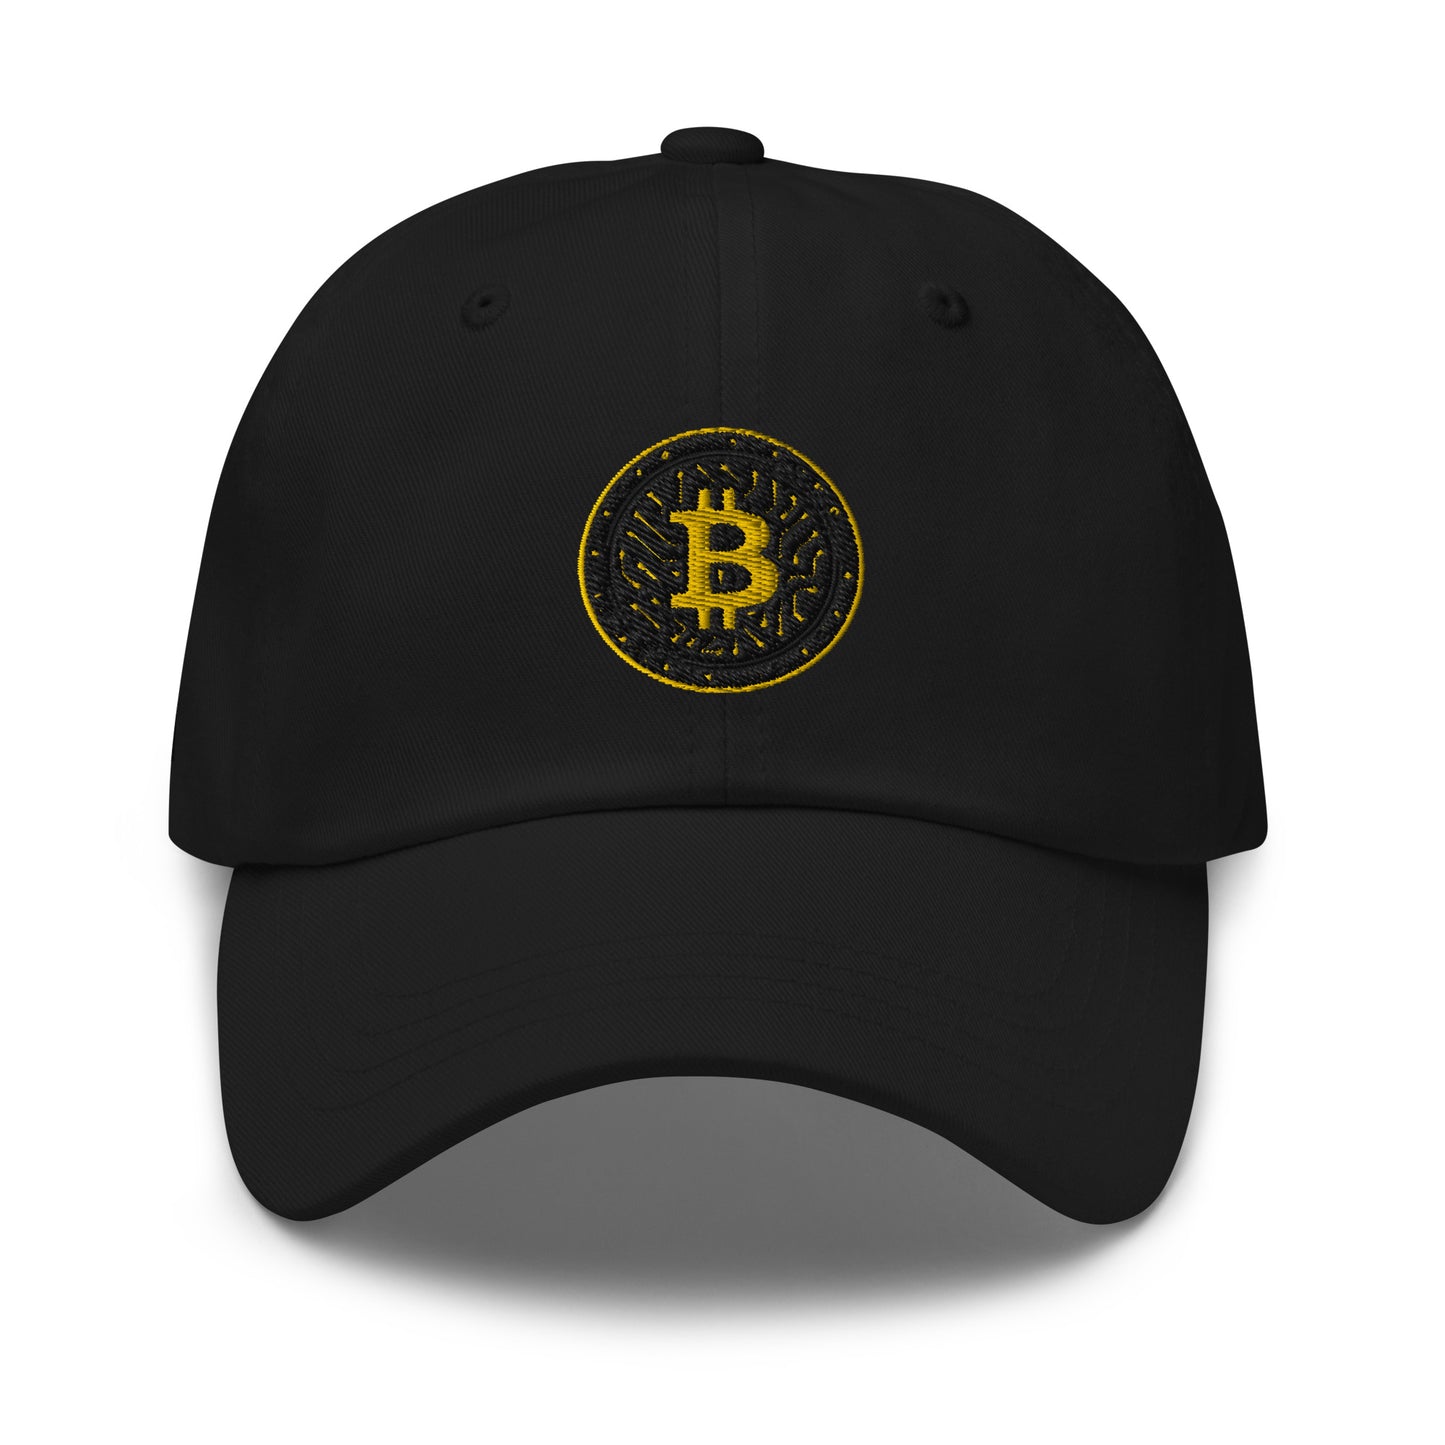 BBB Digital Dad hat